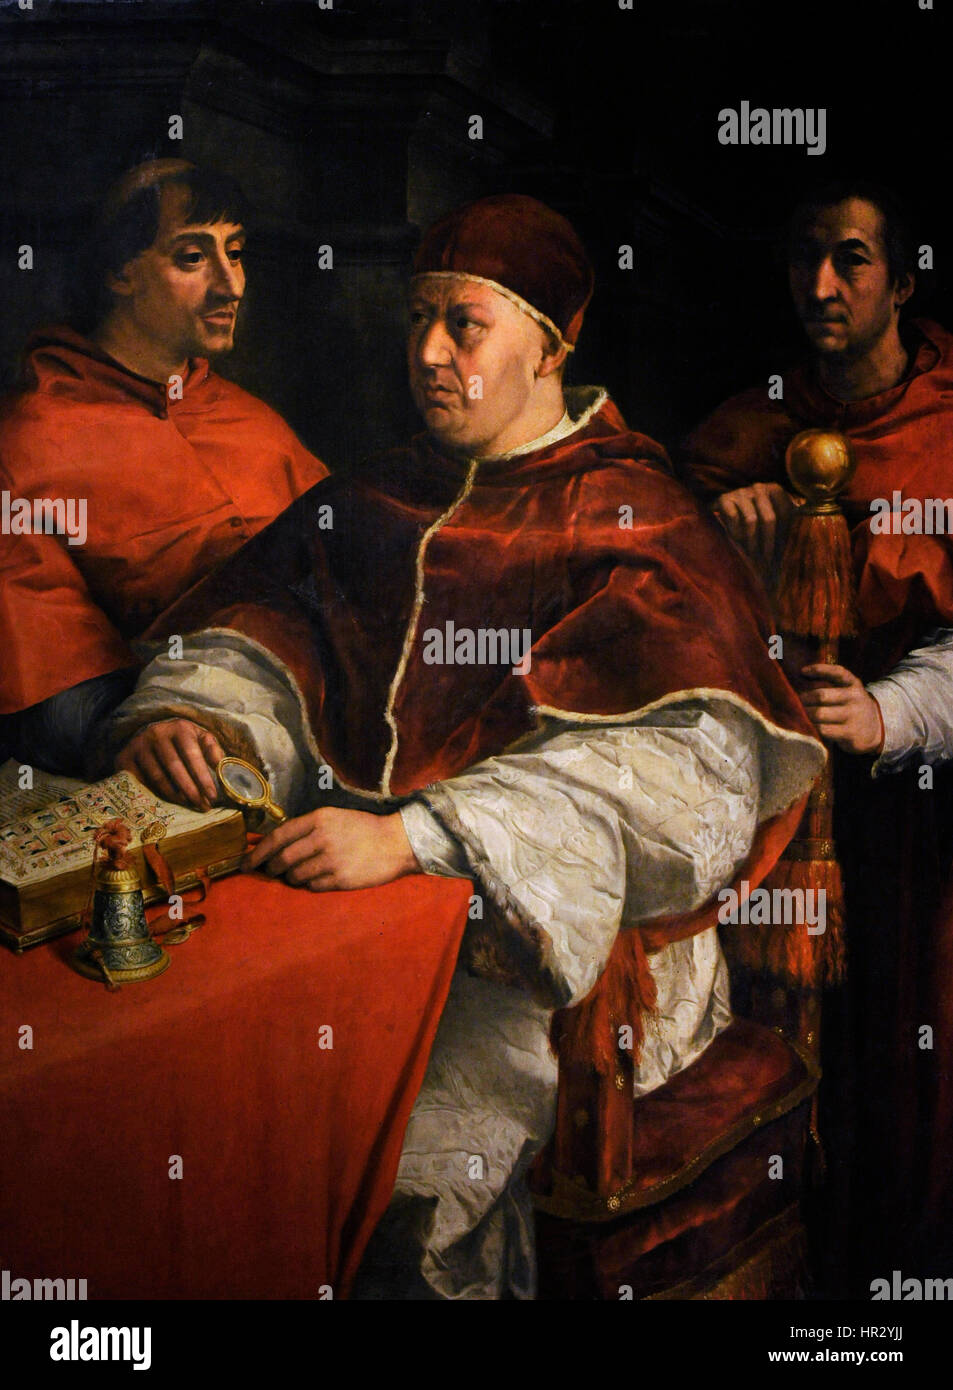 Papst Leo X. (1475-1521). Porträt von Leo X mit zwei Kardinäle, 1525. Gemälde von Andrea del Sarto (1486-1530), Kopie nach Raffael. Farnese-Sammlung. Nationales Museum von Capodimonte. Neapel. Italien. Stockfoto